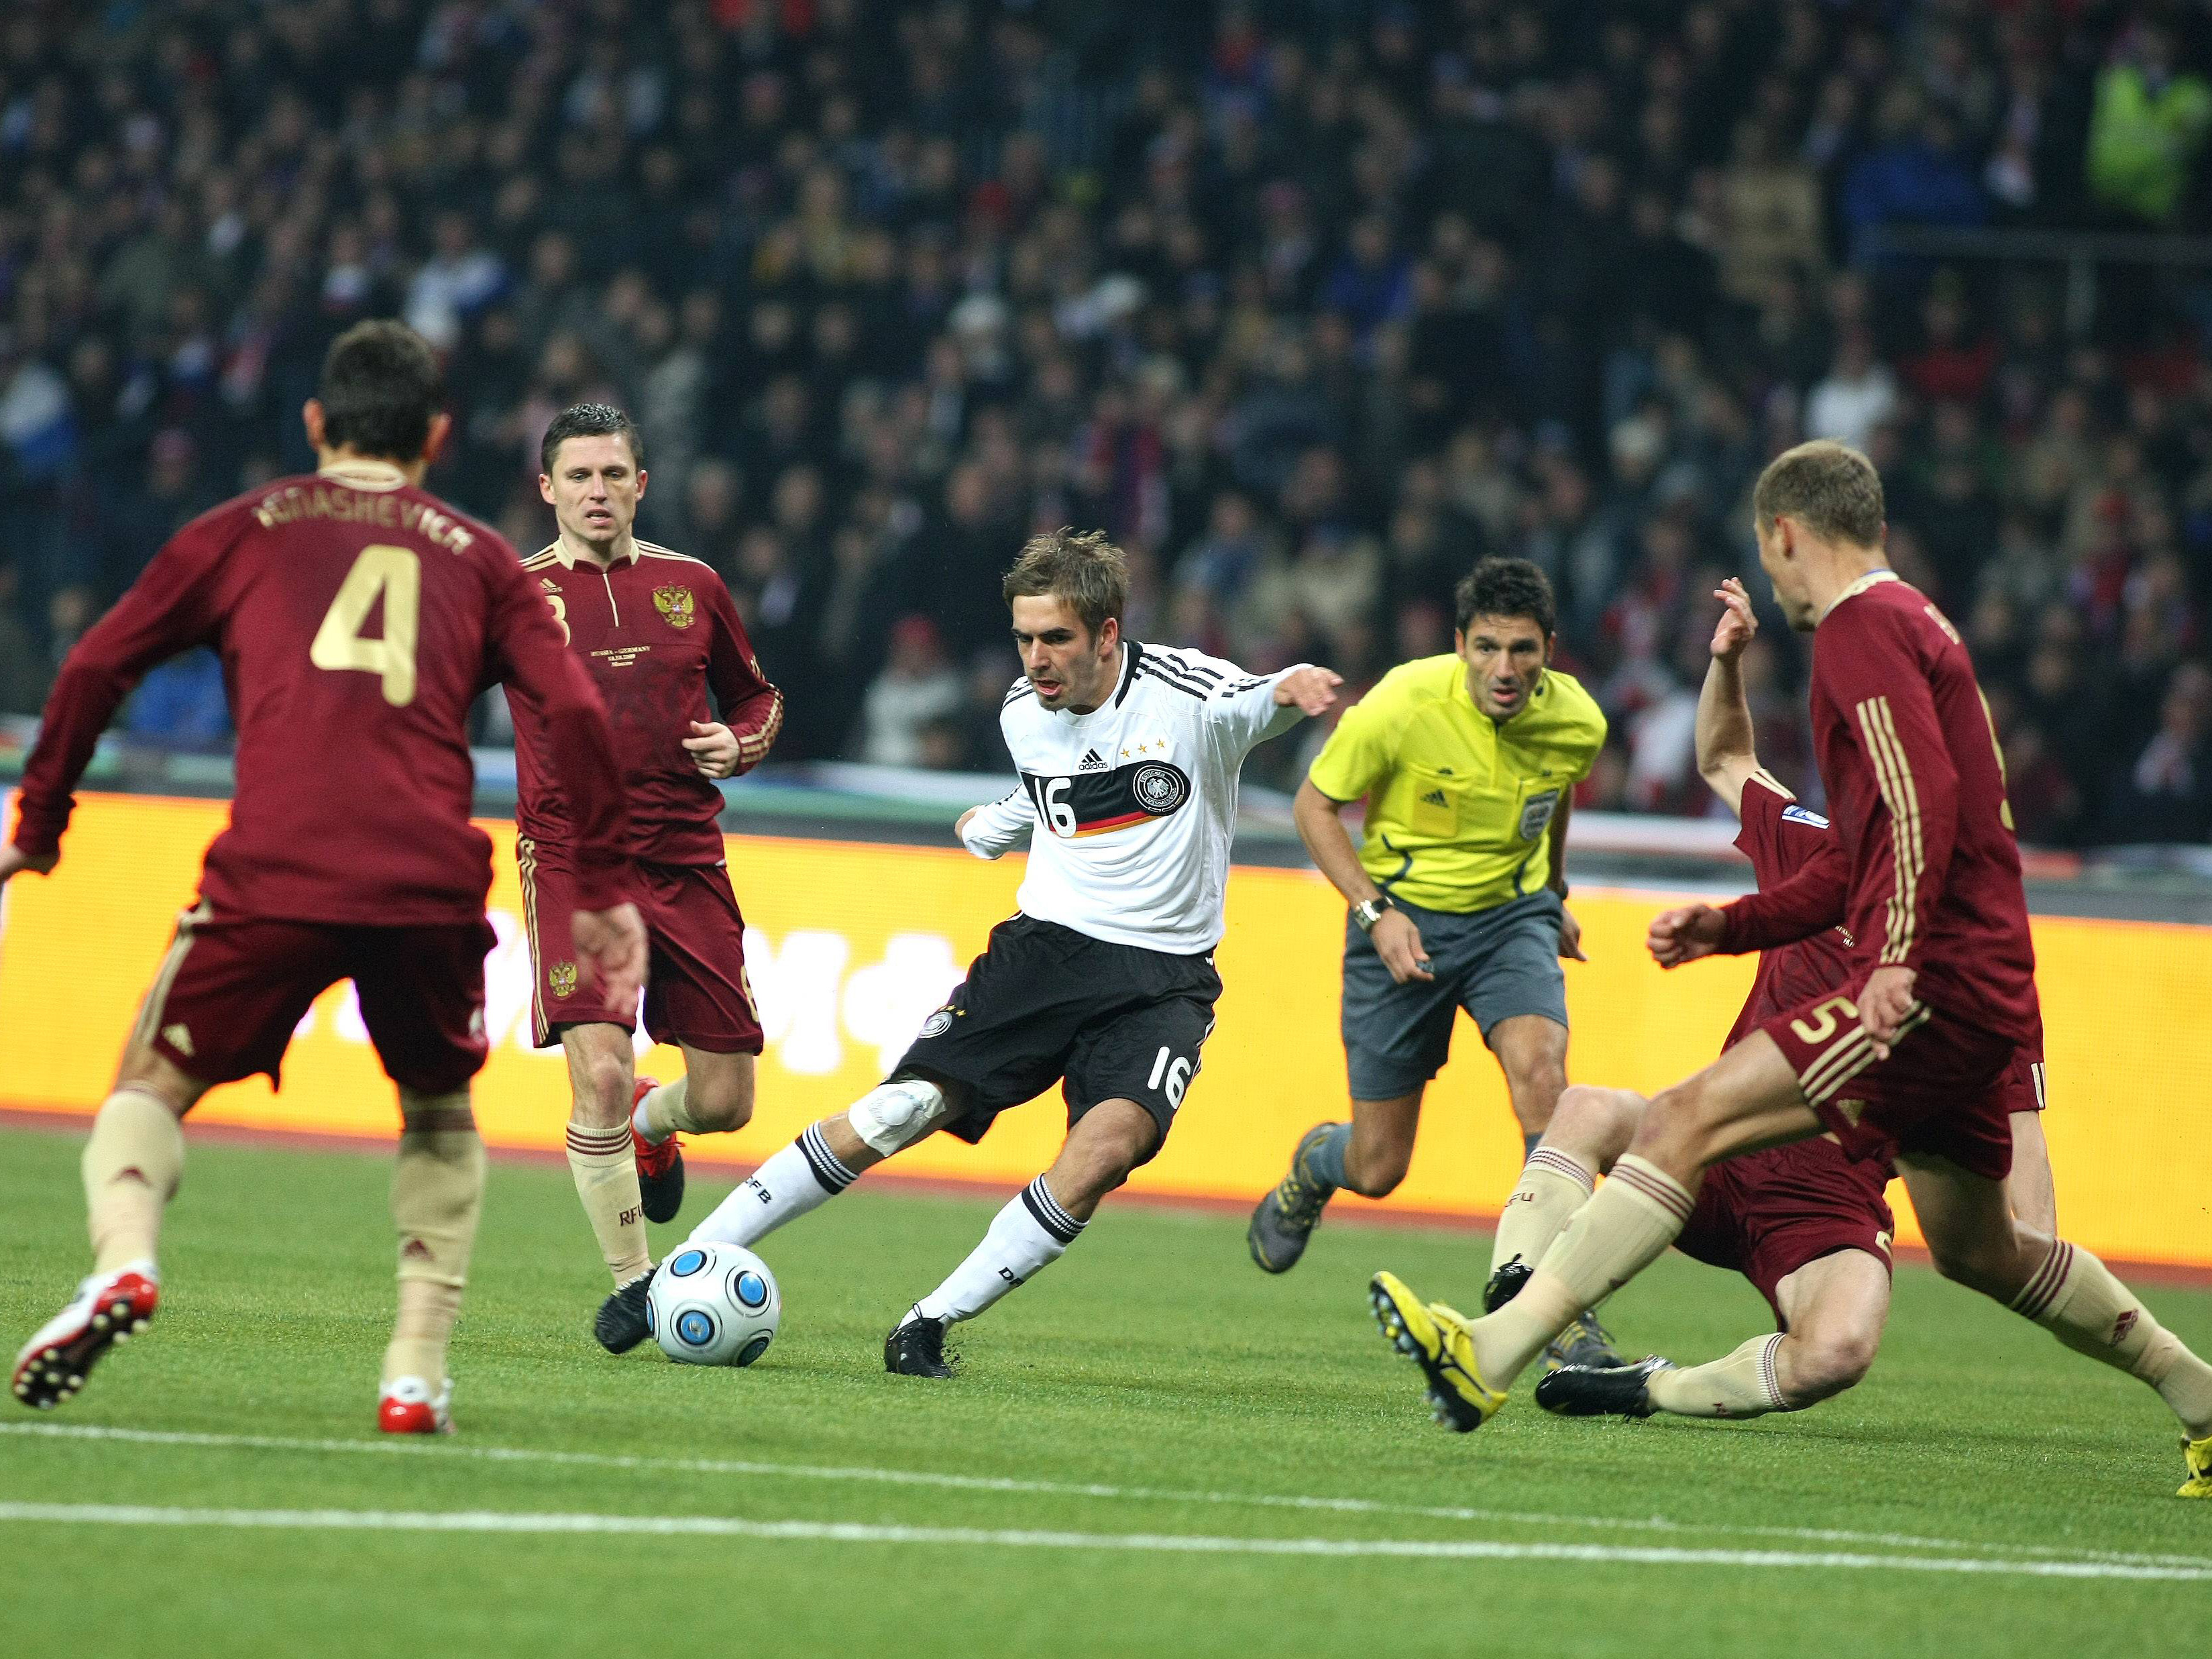 Duitsland en Lahm weten zich in 2009 eenvoudig te plaatsen voor het WK van 2010 in Zuid-Afrika. In Groep 4 van de kwalificatie wint het op 10 oktober met 0-1 bij concurrent Rusland, waardoor Duitsland een ticket kan boeken. Die Mannschaft sluit de poulefase af met acht overwinningen en twee nederlagen en gaat in Zuid-Afrika op jacht naar de wereldtitel.